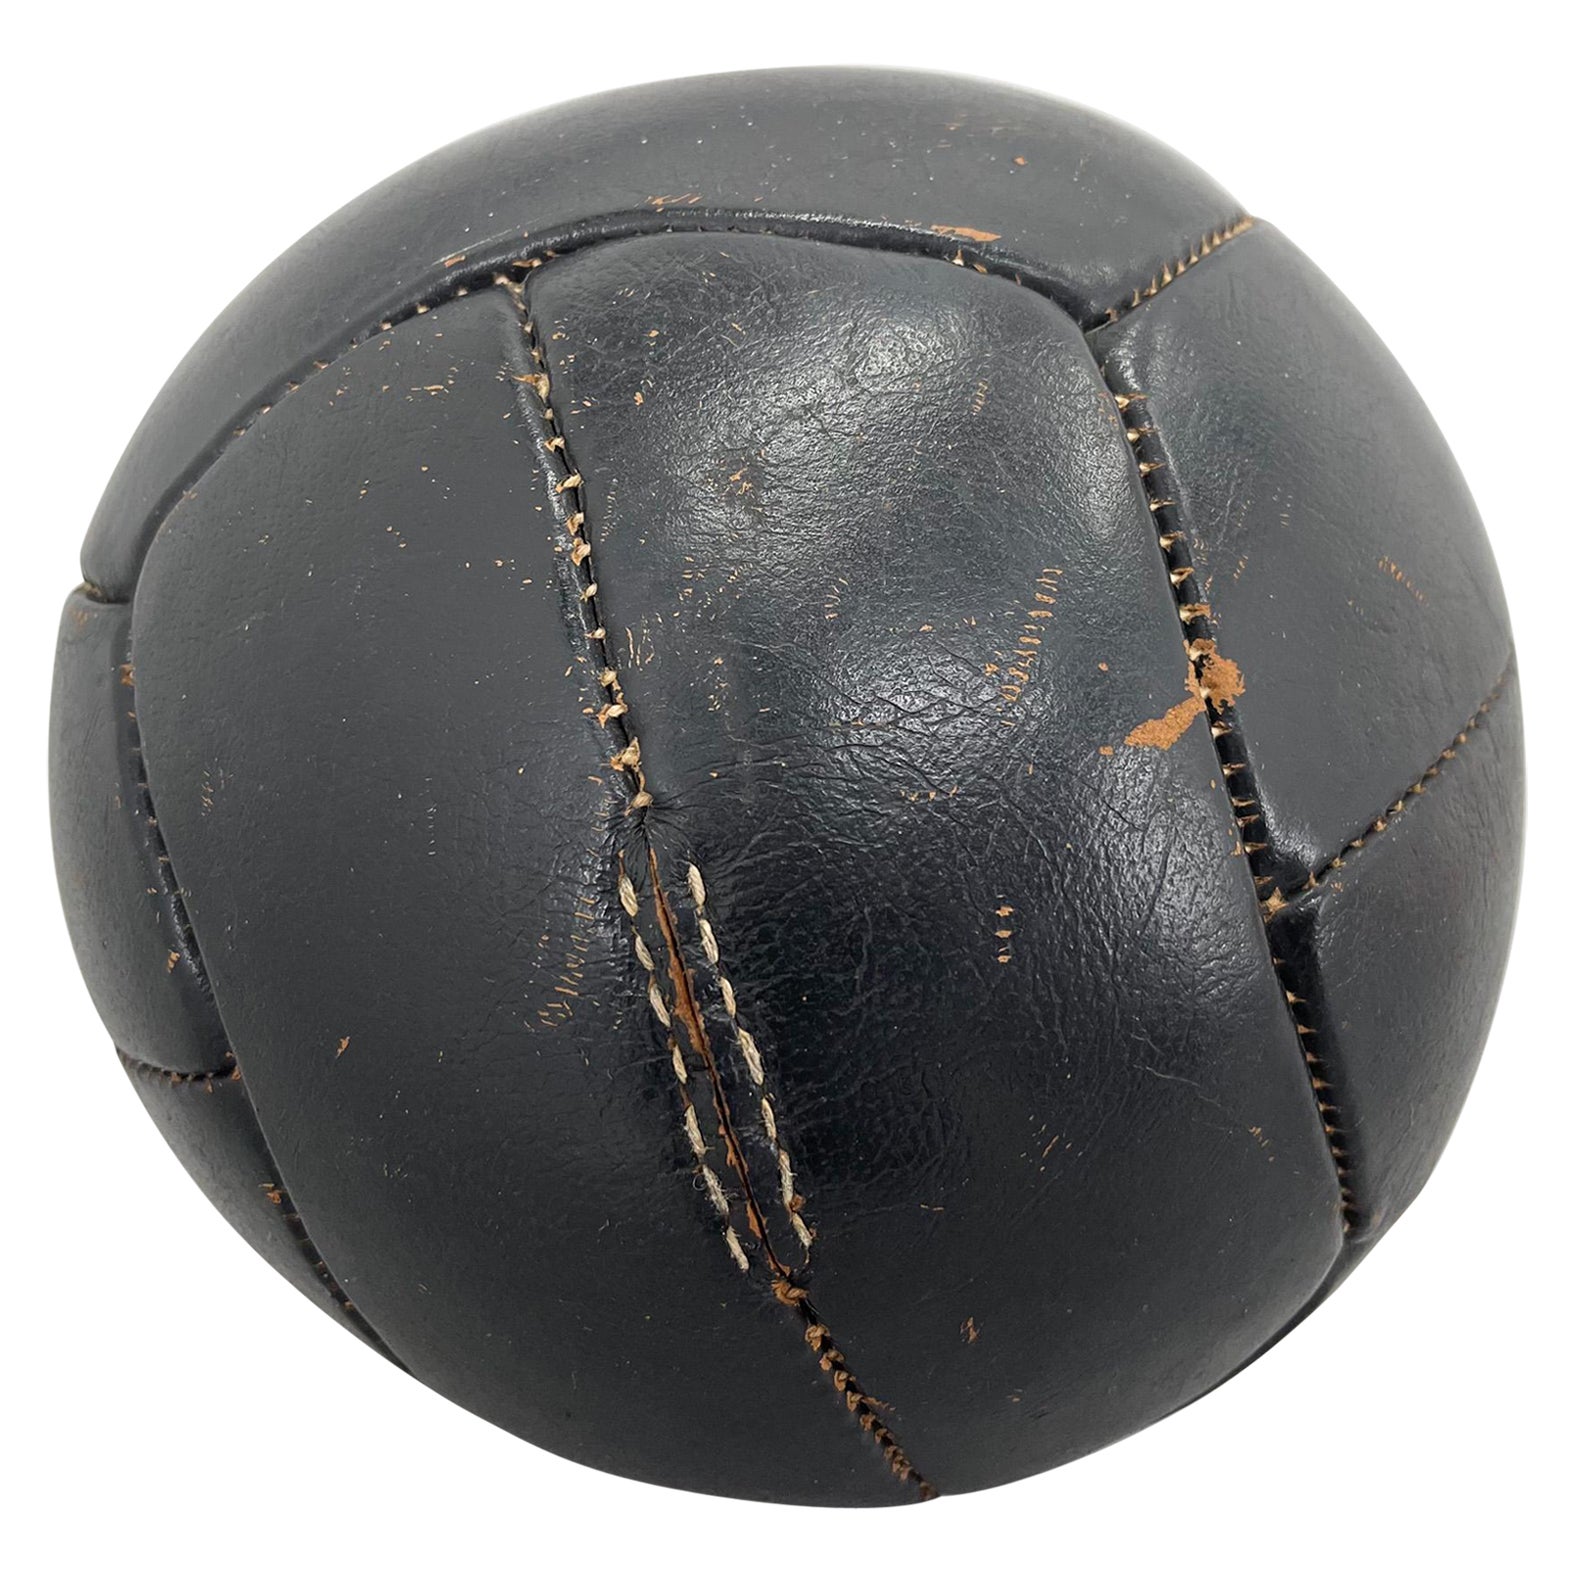 Original Vintage schwere Leder Trainingsball mit schöner Patina. Der Ball ist 